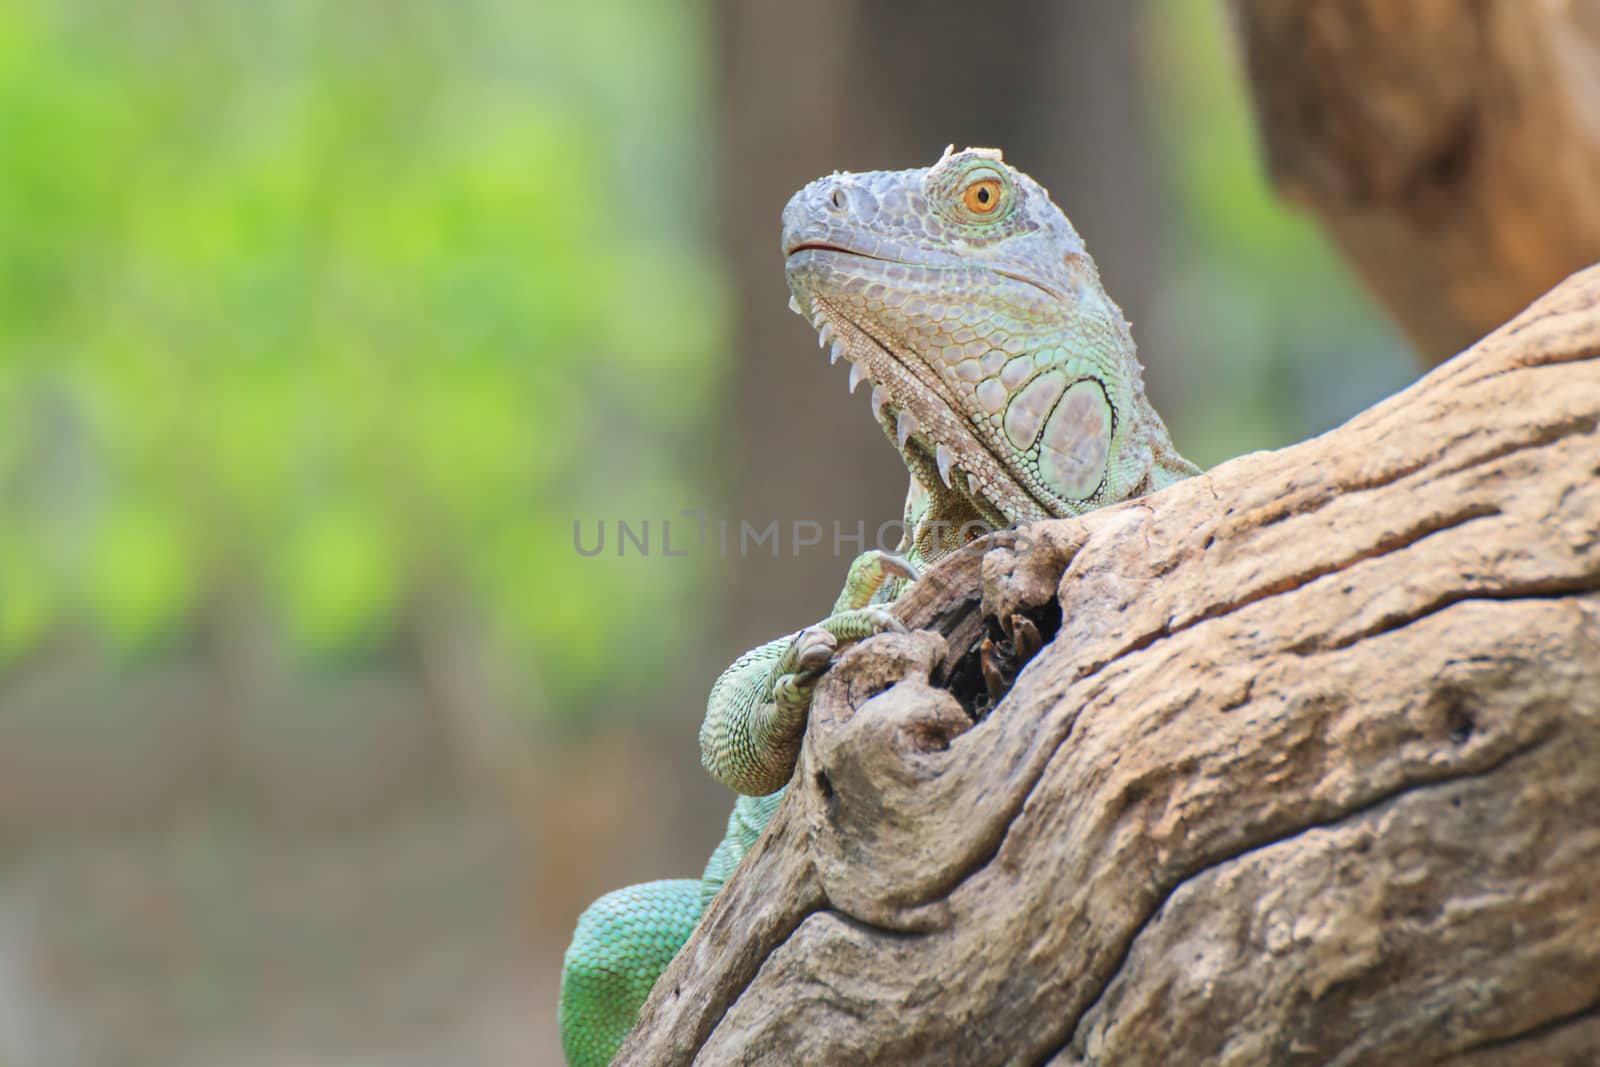 Mature male Green Iguana (Latin name: Iguana iguana).